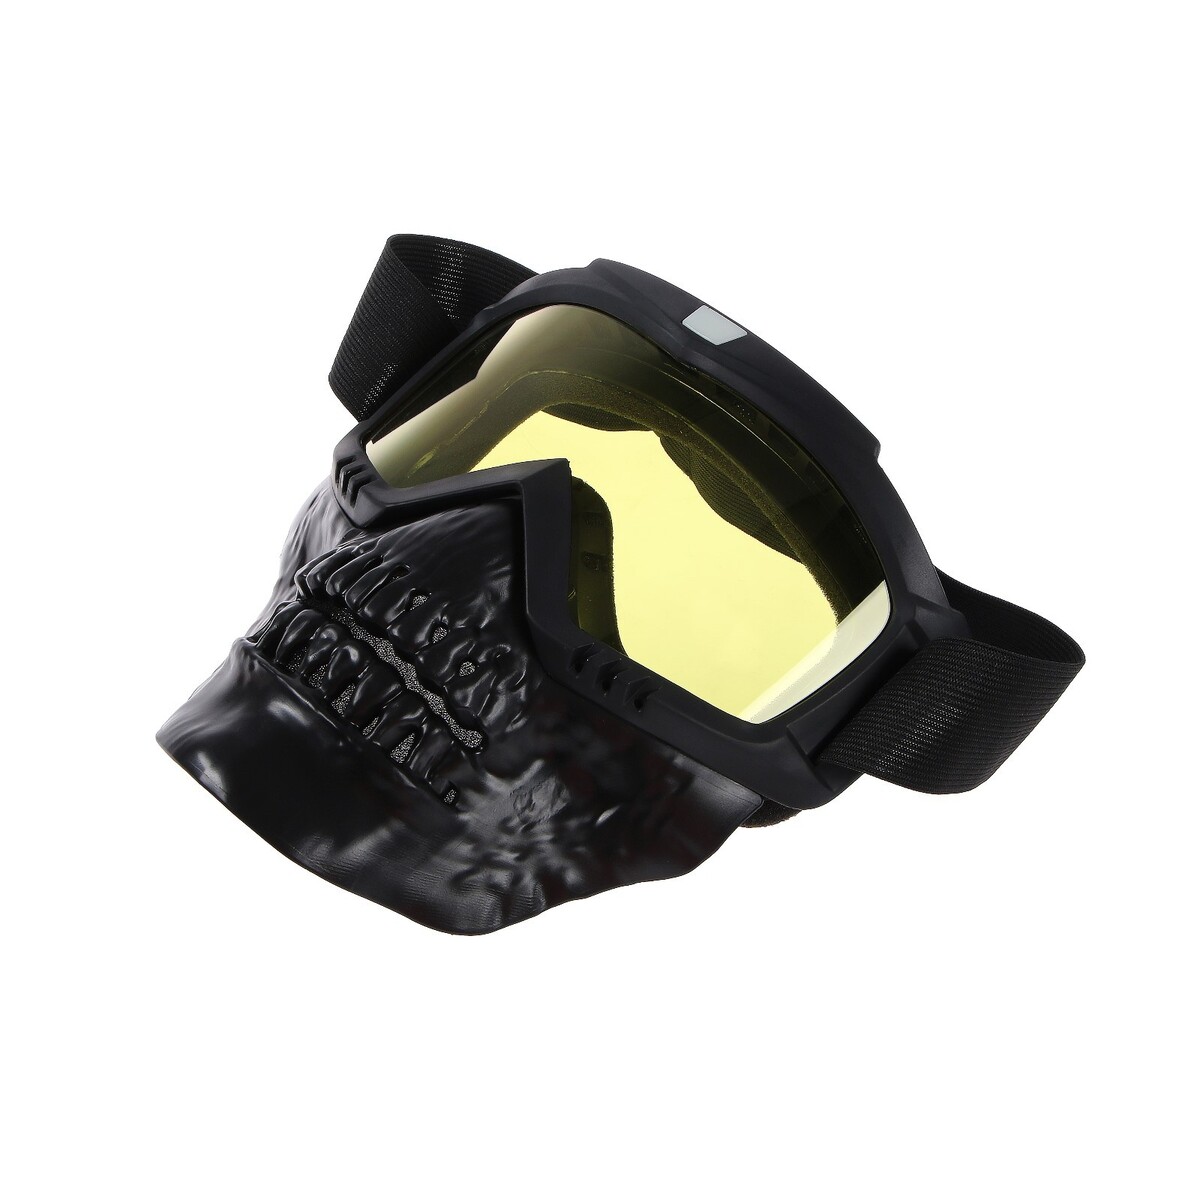 Очки-маска для езды на мототехнике, разборные, визор желтый, цвет черный очки маска для езды на мототехнике разборные визор желтый